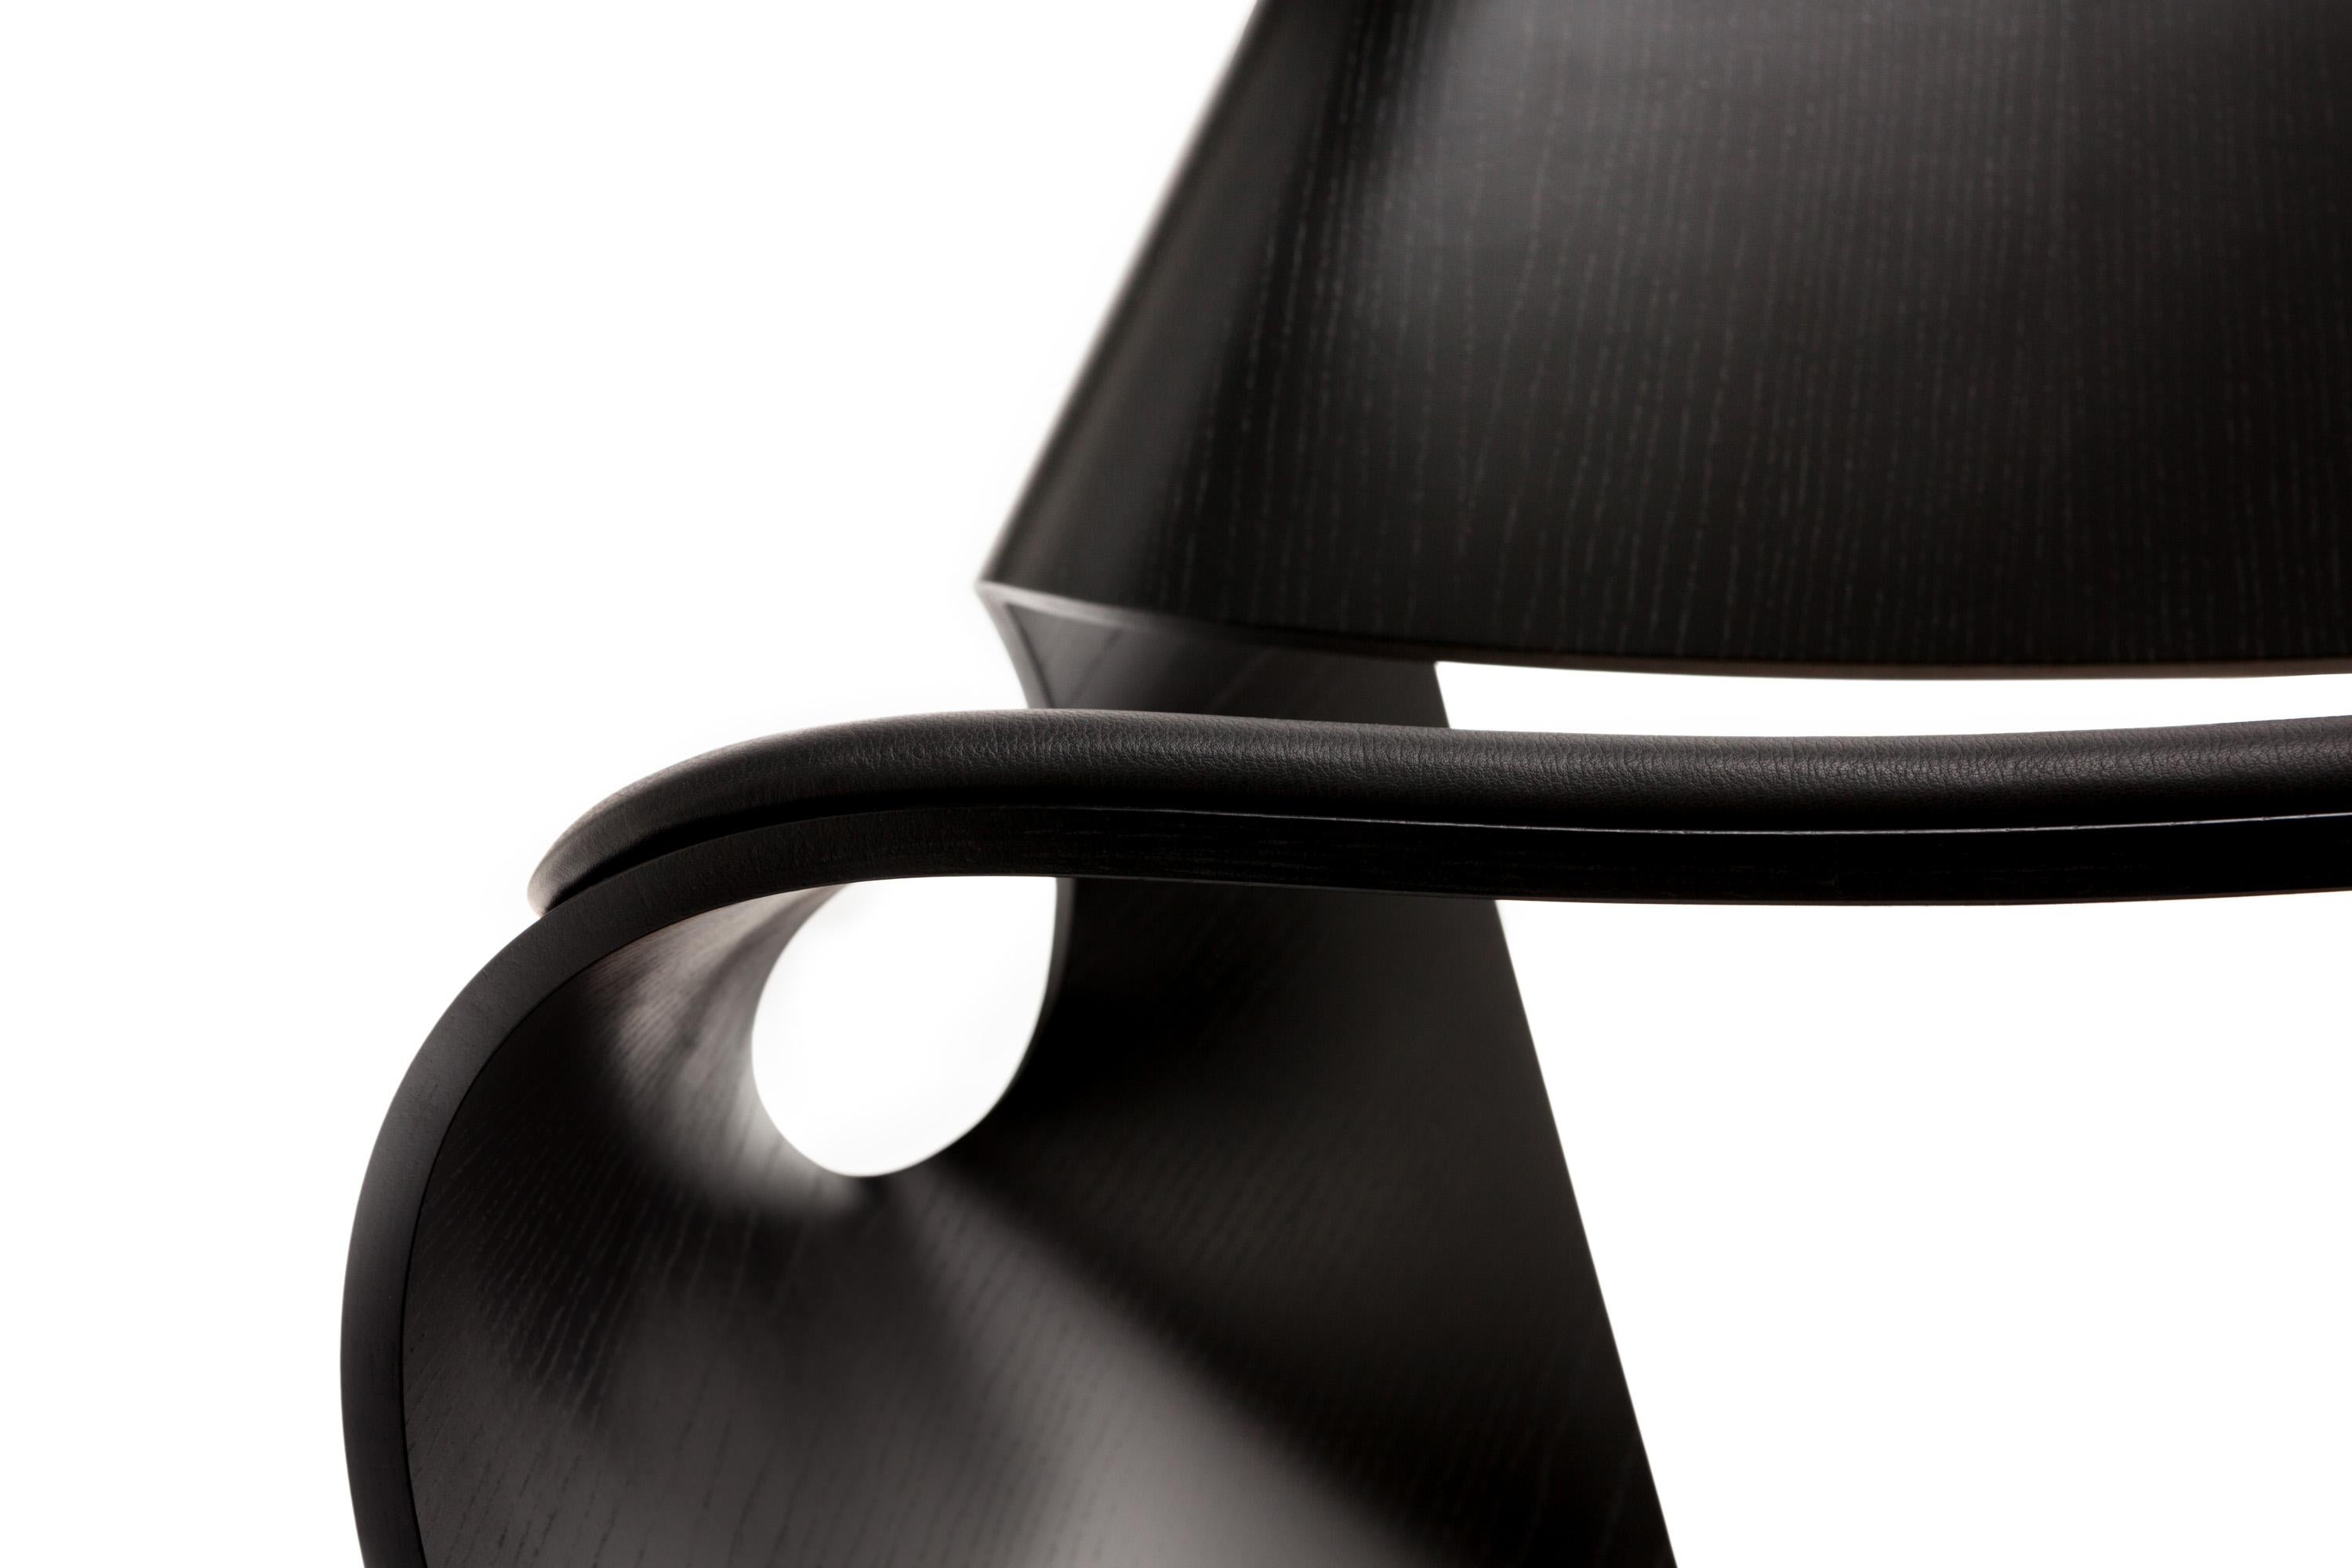 Der zeitgenössische Cowrie-Stuhl ist von den organischen, konkaven Linien der Meeresmuscheln inspiriert. Das ikonische Design, das in Taschens 1000 Chairs vorgestellt wird, hat eine geschwungene Form, die das Ergebnis eines umfassenden Forschungs-